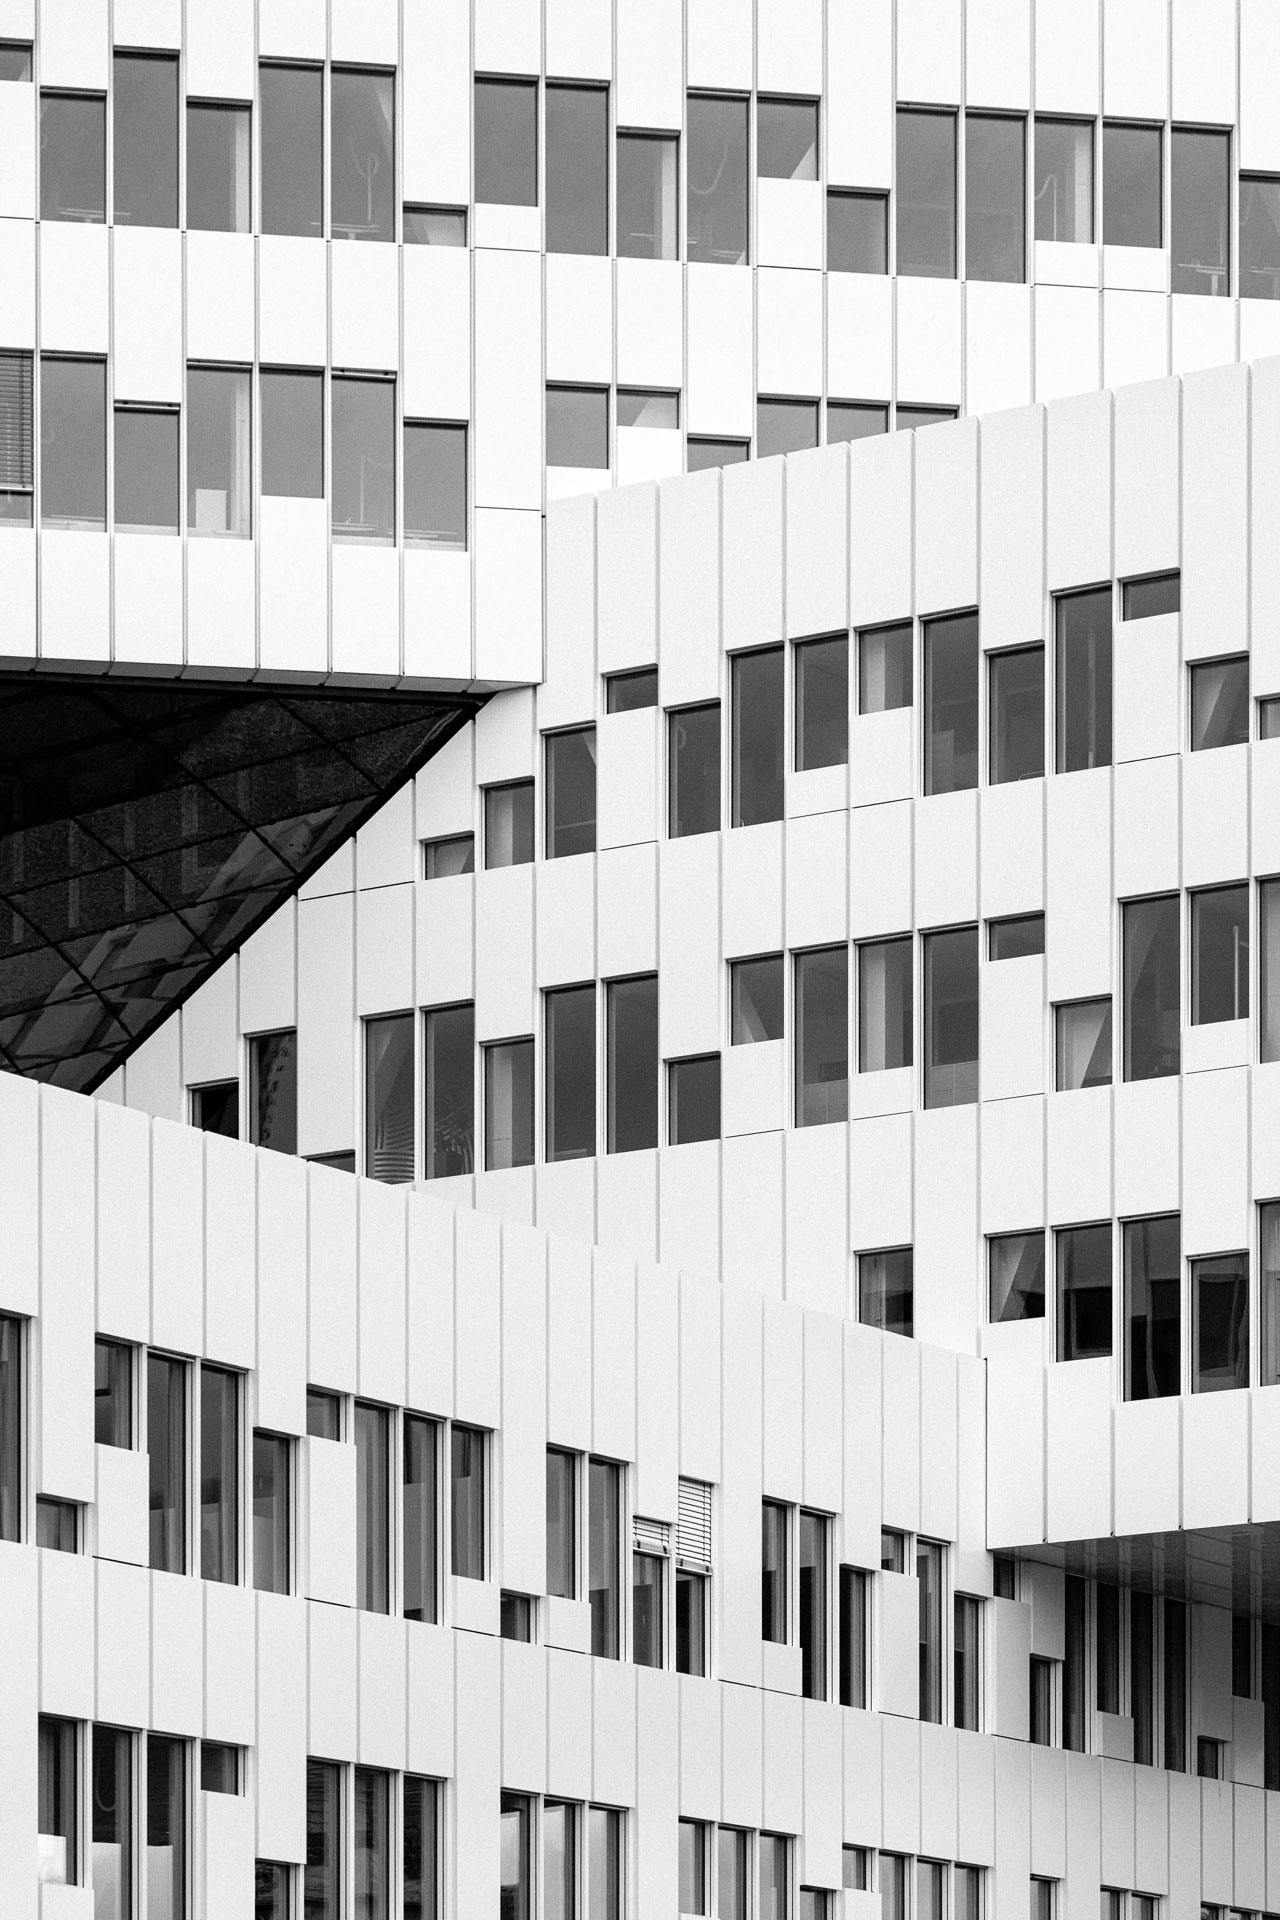 Equinor Forneb, Statoil Headquarters, Oslo - A-Lab - Black & White Fine Art Architecture Photography